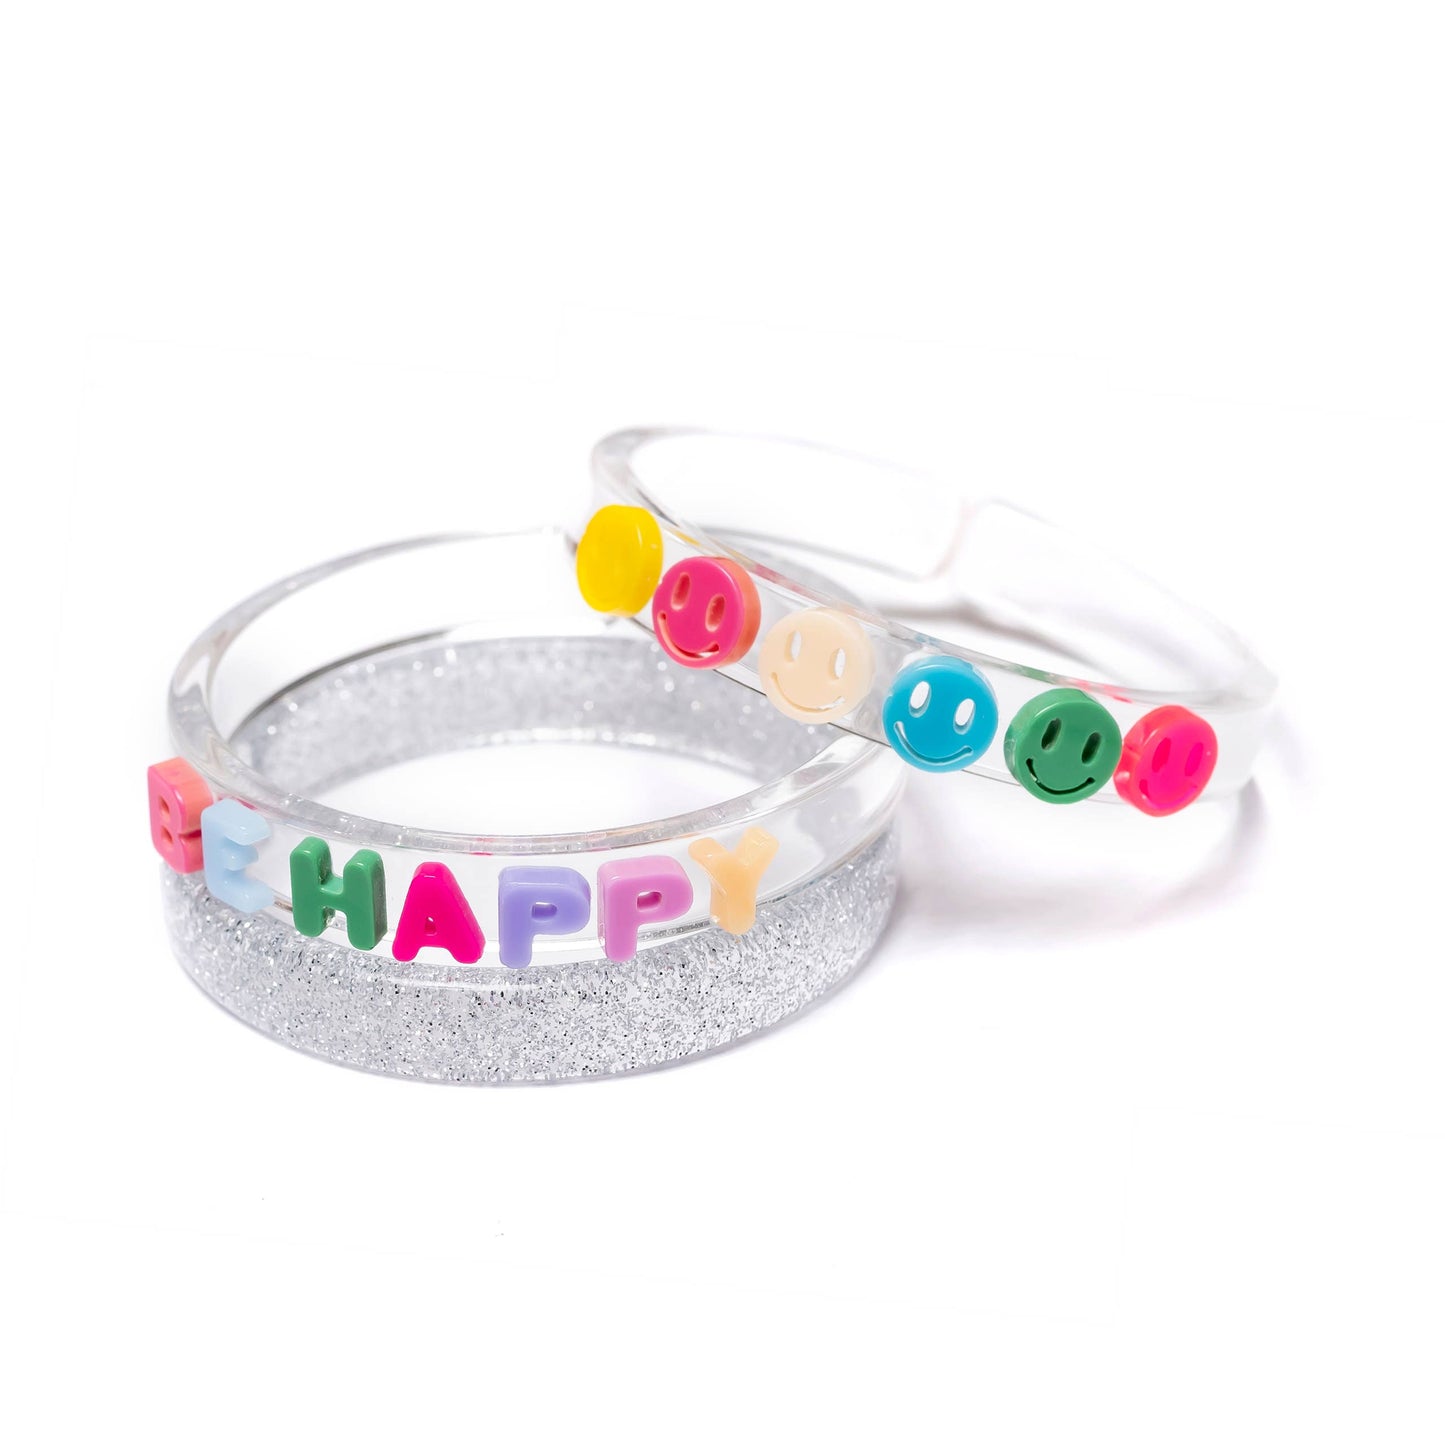 Be Happy Bangle Bracelets Set